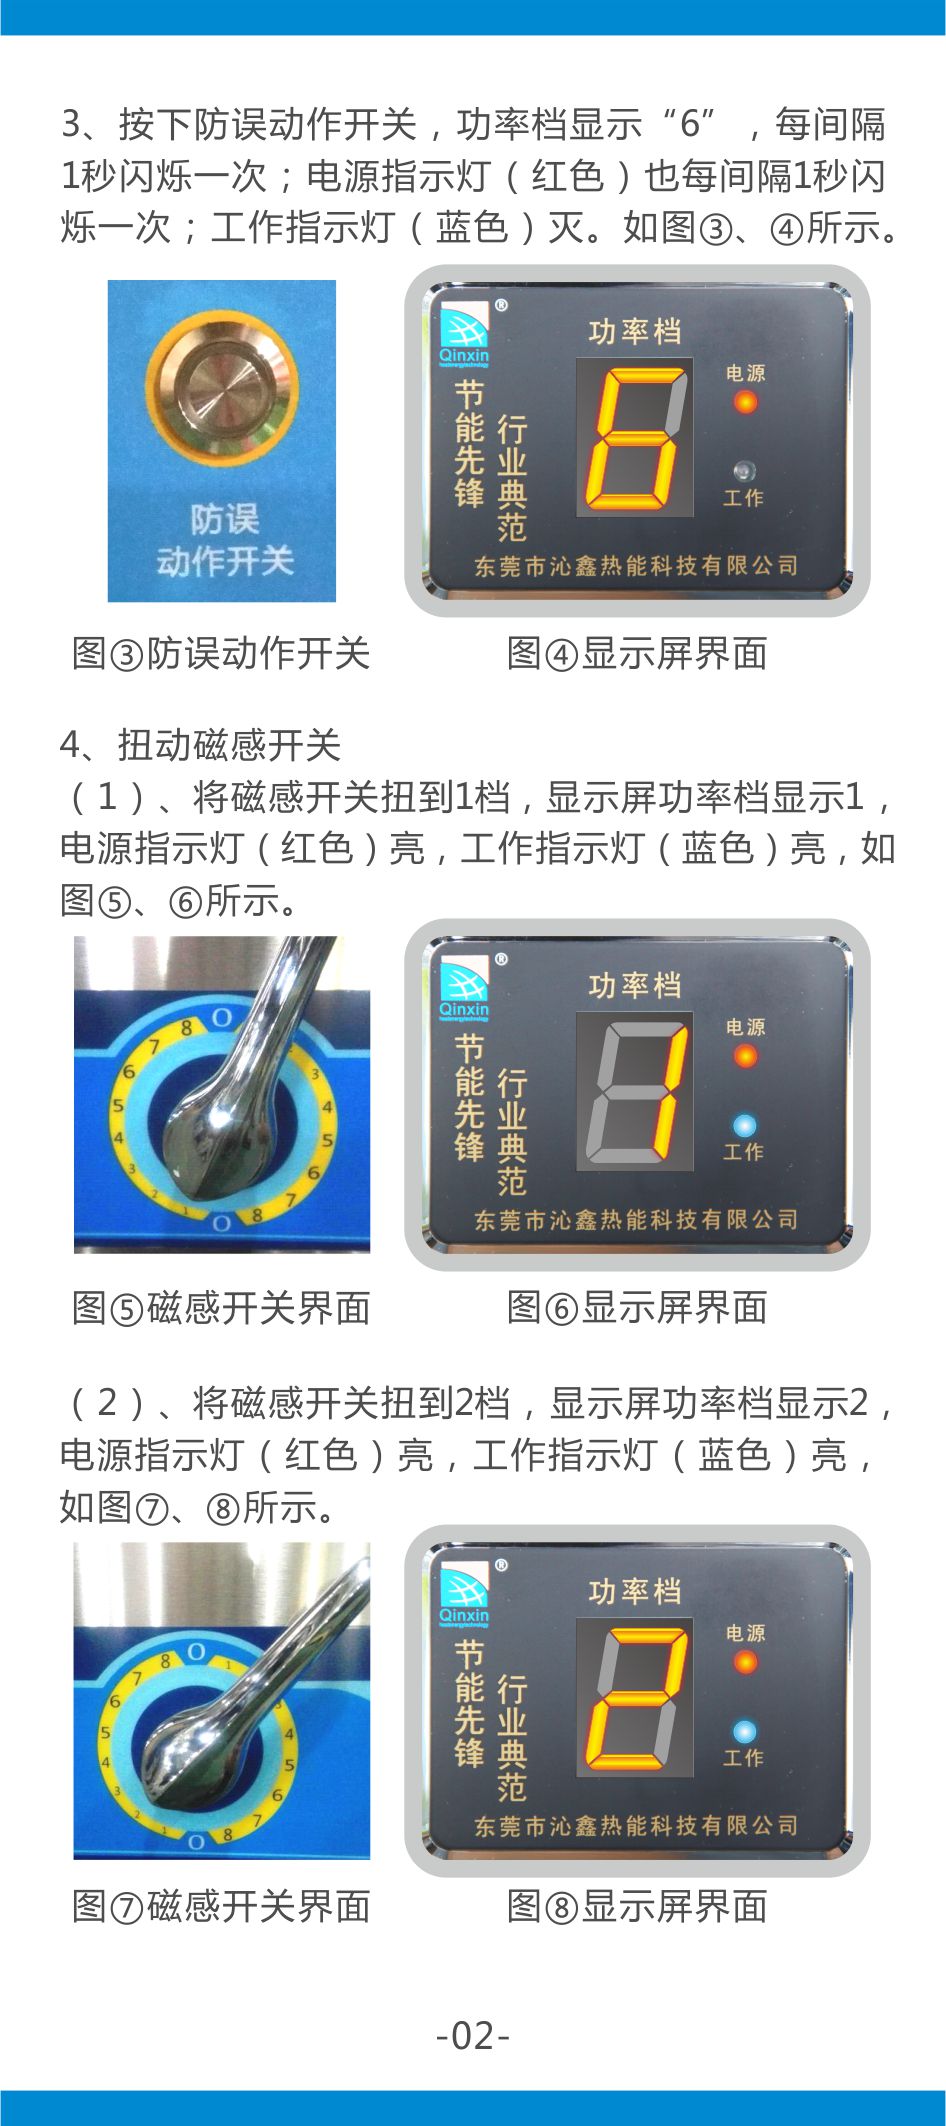 沁鑫商用电磁炉第一代说明书-3